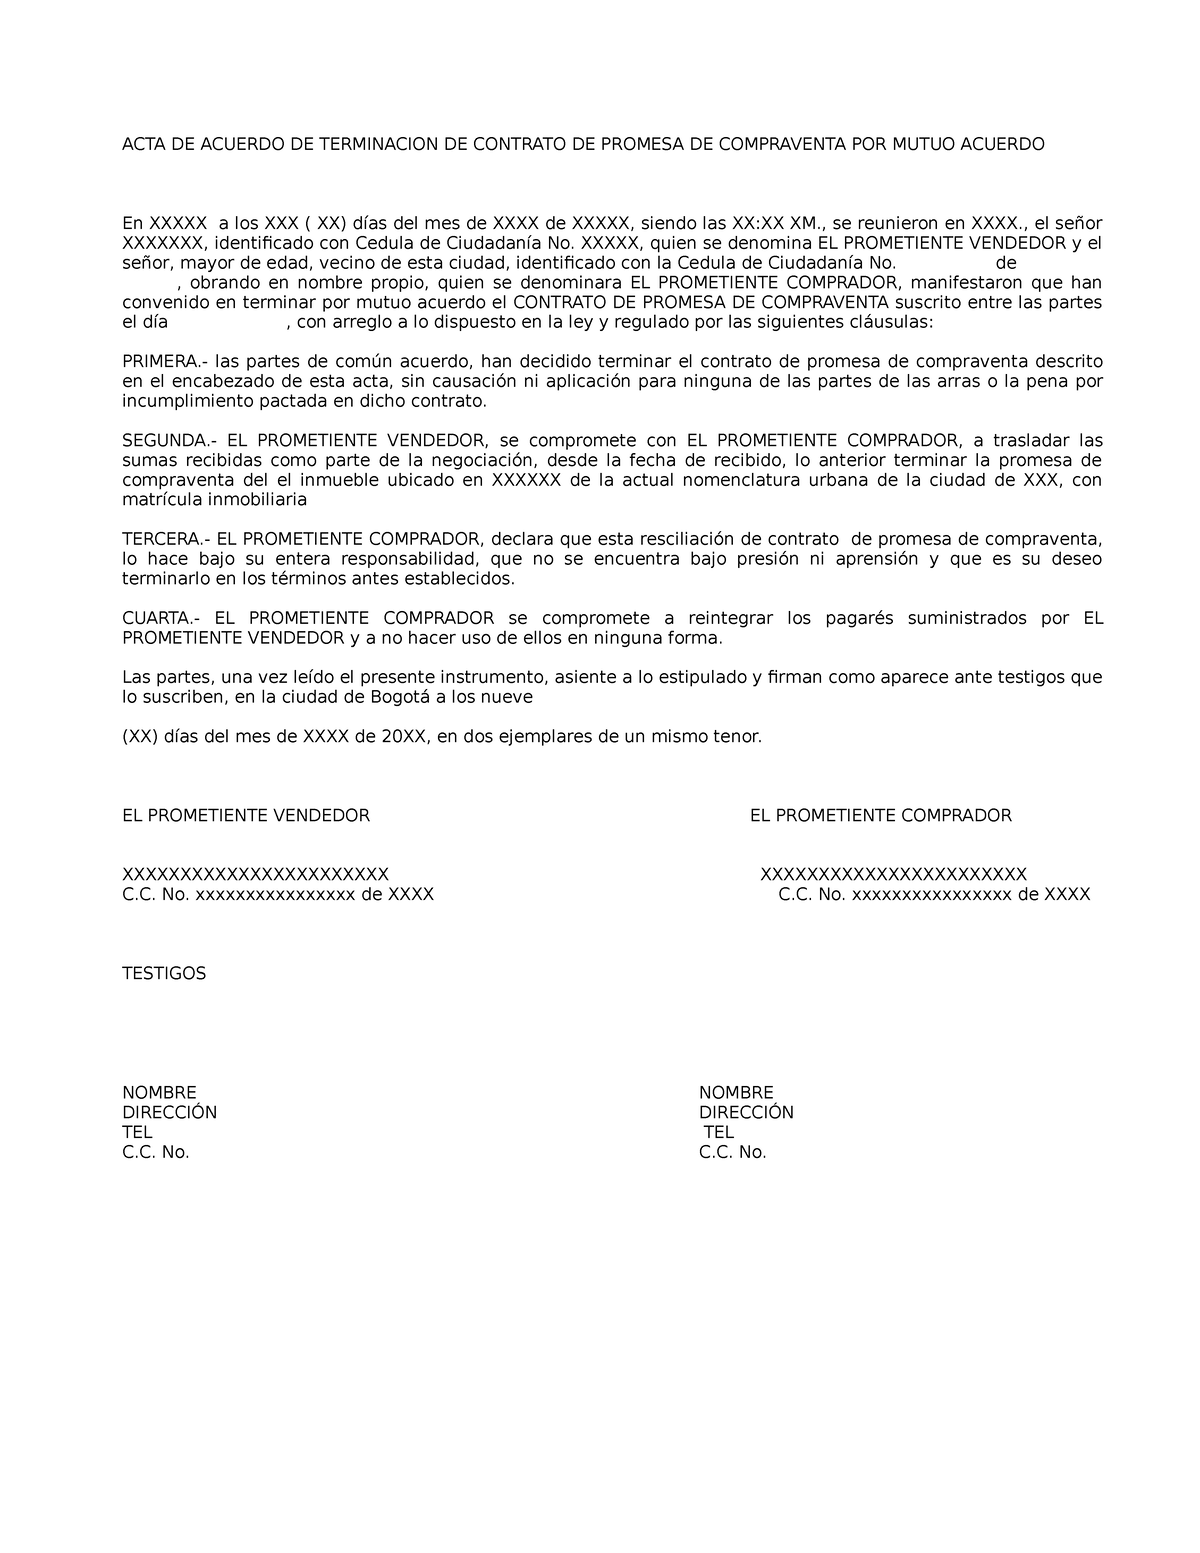 ACTA DE Acuerdo DE Terminacion DE Contrato DE Promesa DE Compraventa POR  Mutuo Acuerdo - ACTA DE - Studocu